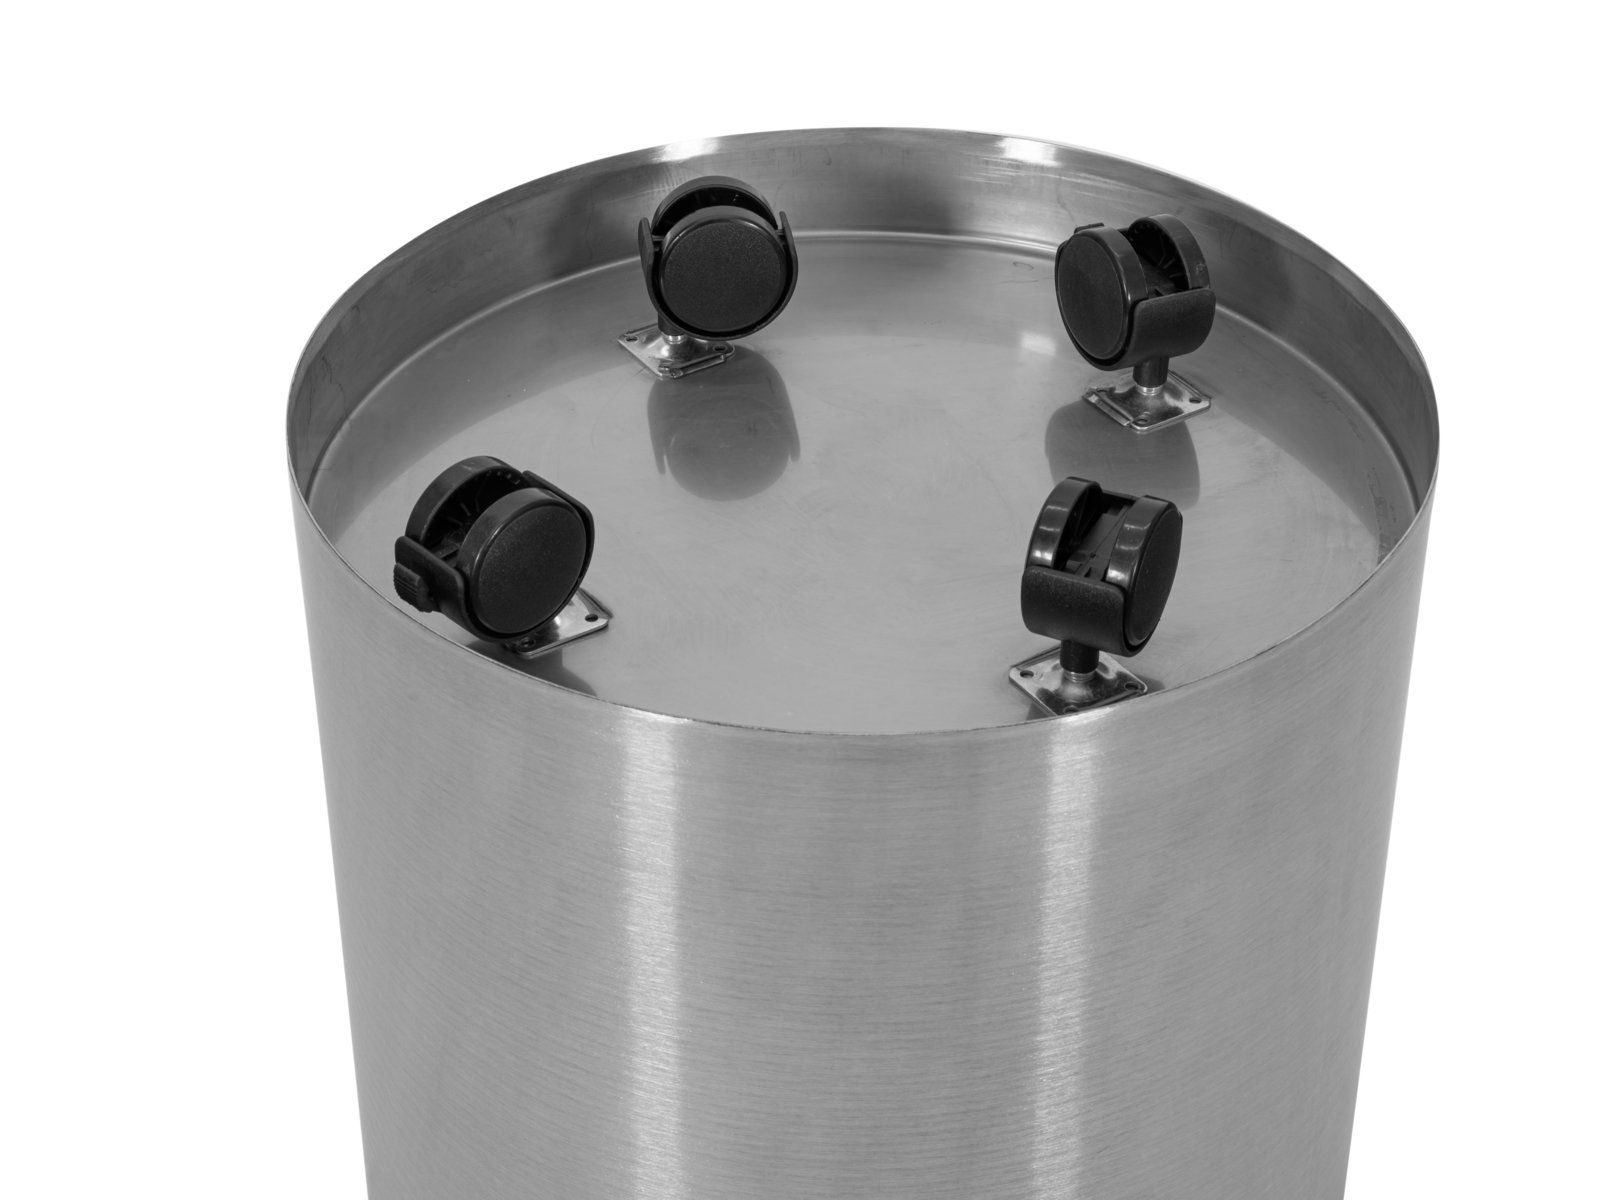 EUROPALMS STEELECHT-40 Nova, stainless steel pot, Ã40cm